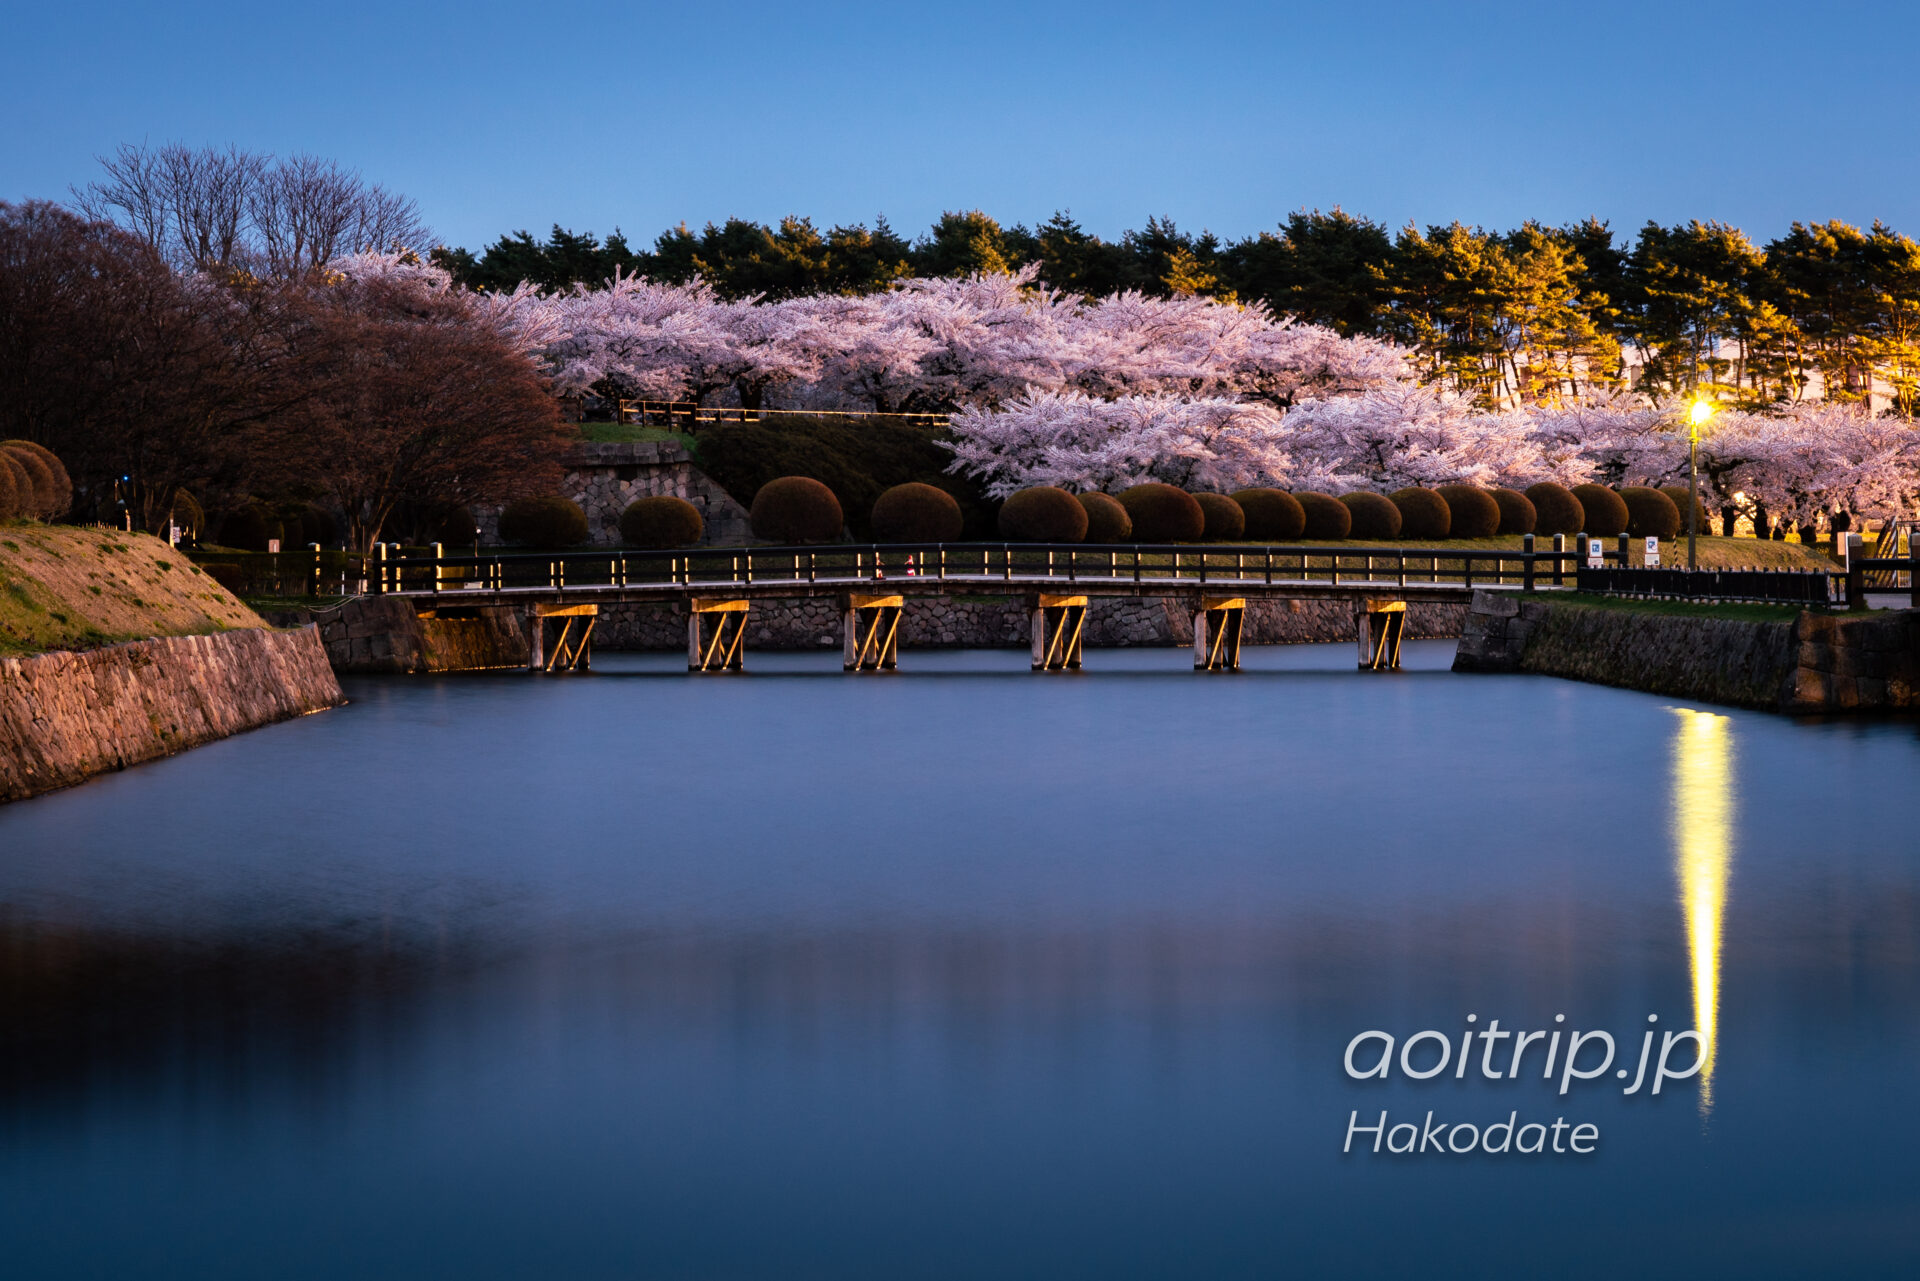 函館 五稜郭 二の橋と桜並木